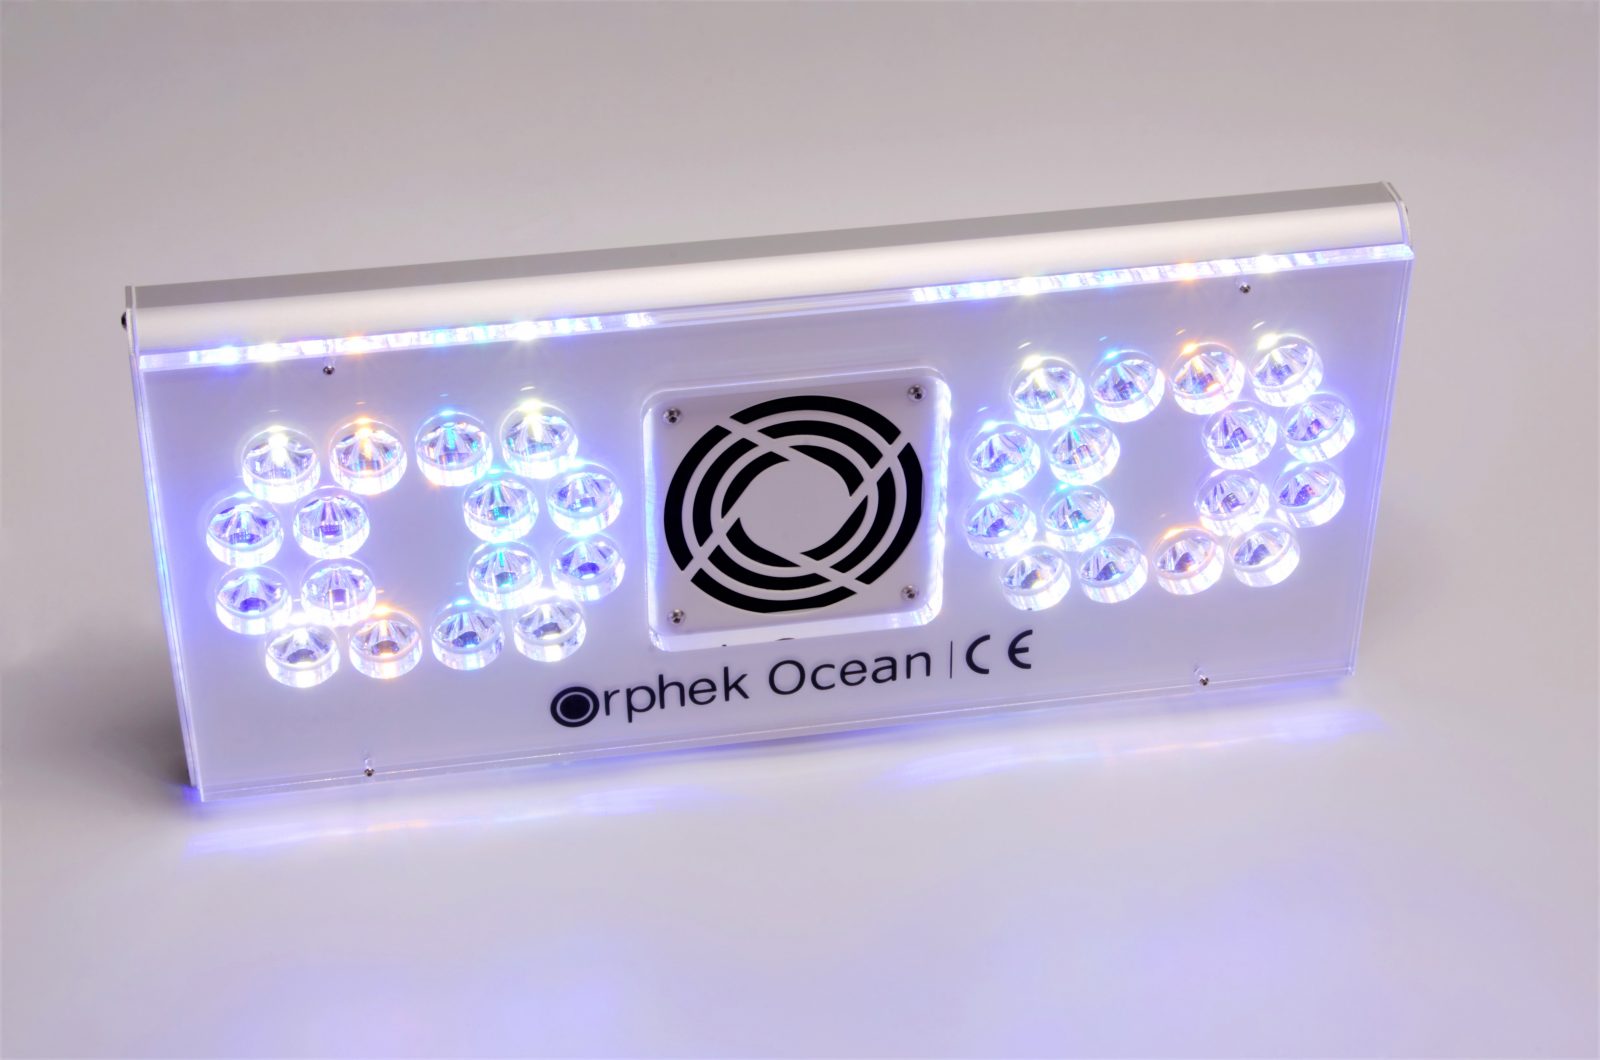 ఓర్ఫెక్-ఓషన్-రీఫ్-అక్వేరియం-LED-లైటింగ్-అన్ని ఛానెల్